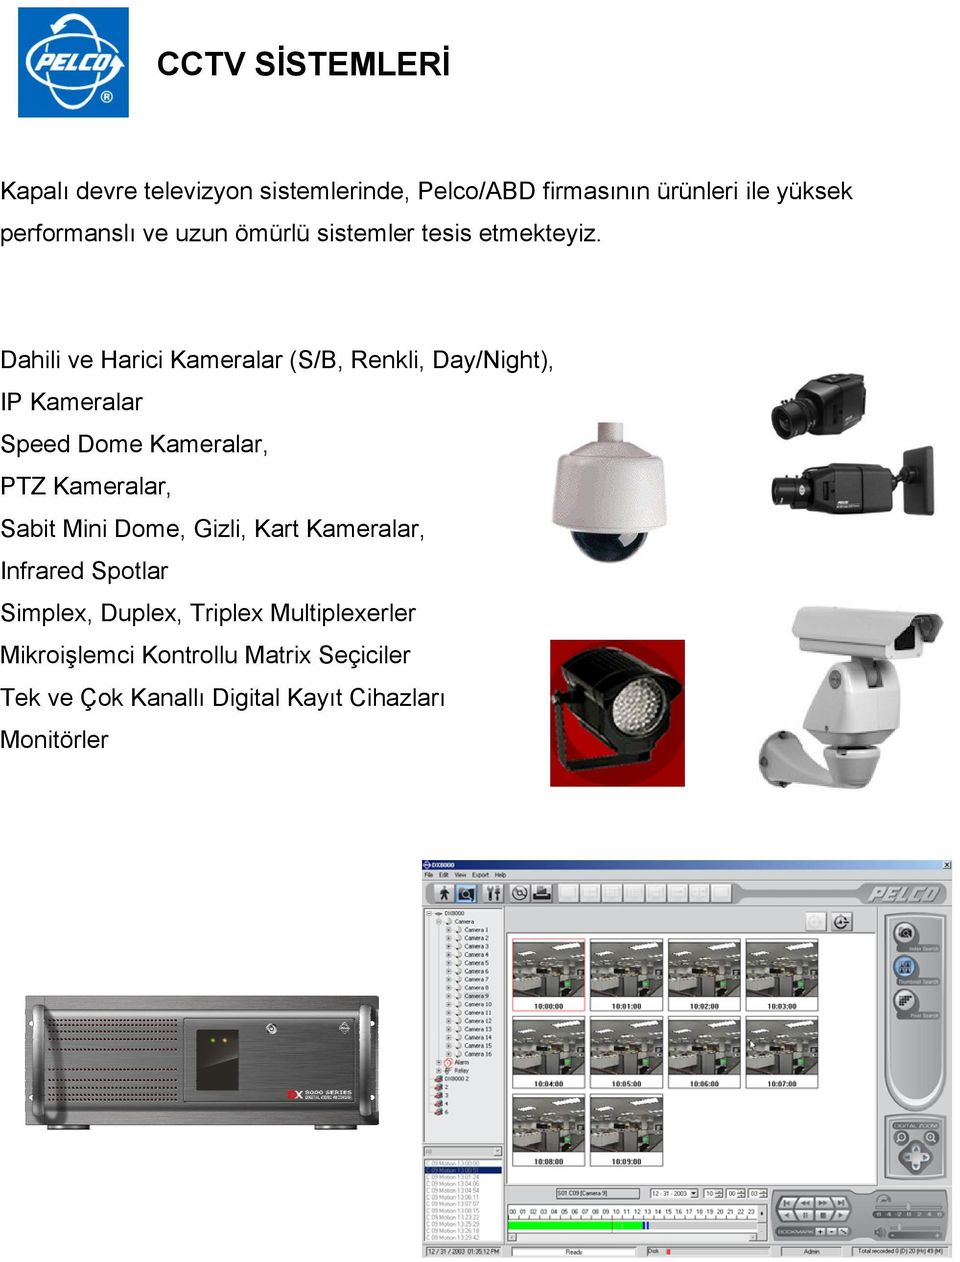 Dahili ve Harici Kameralar (S/B, Renkli, Day/Night), IP Kameralar Speed Dome Kameralar, PTZ Kameralar, Sabit